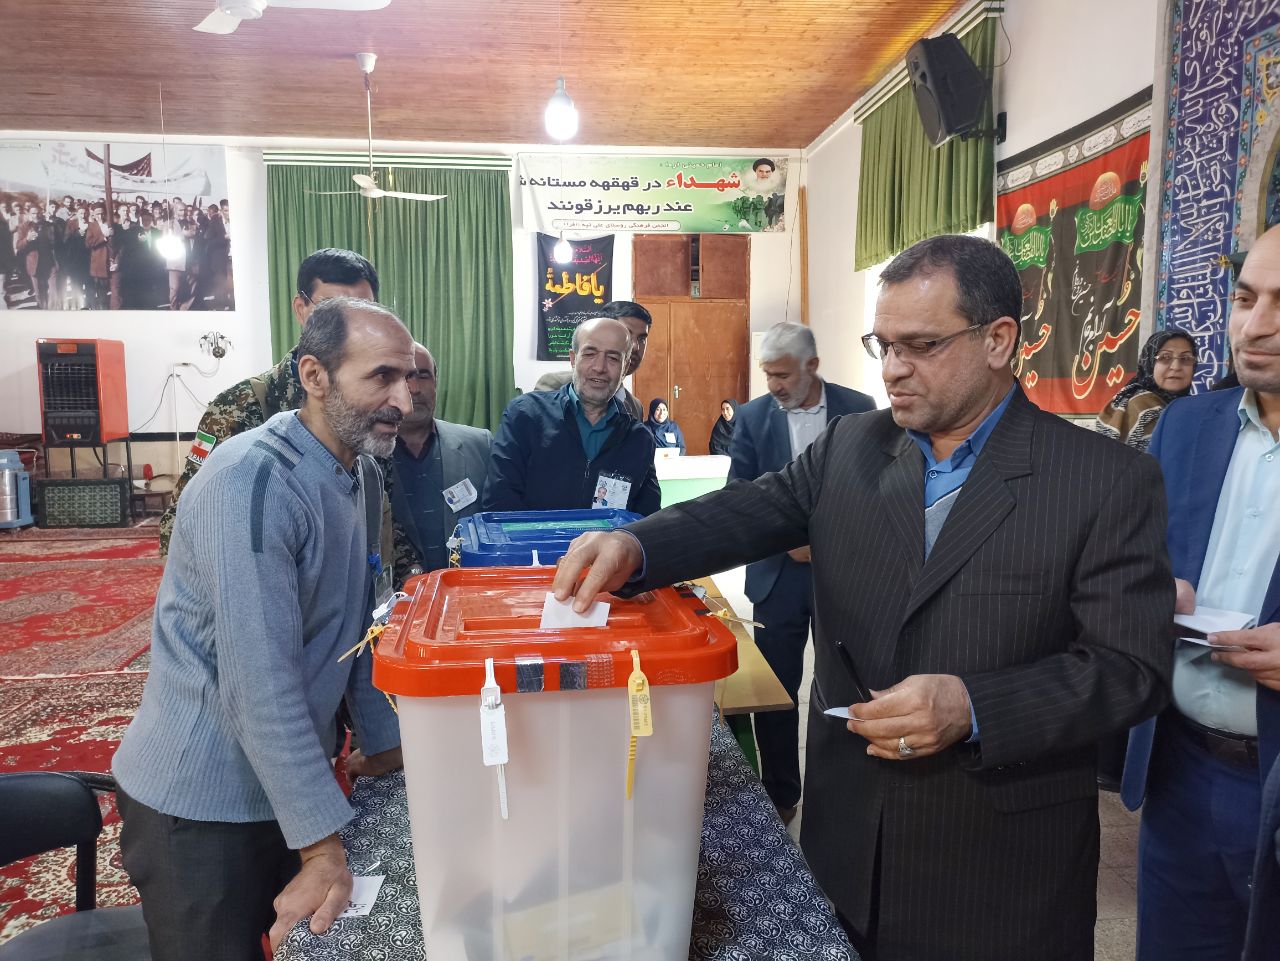 فرماندار بهشهر رای خود را به صندوق انداخت